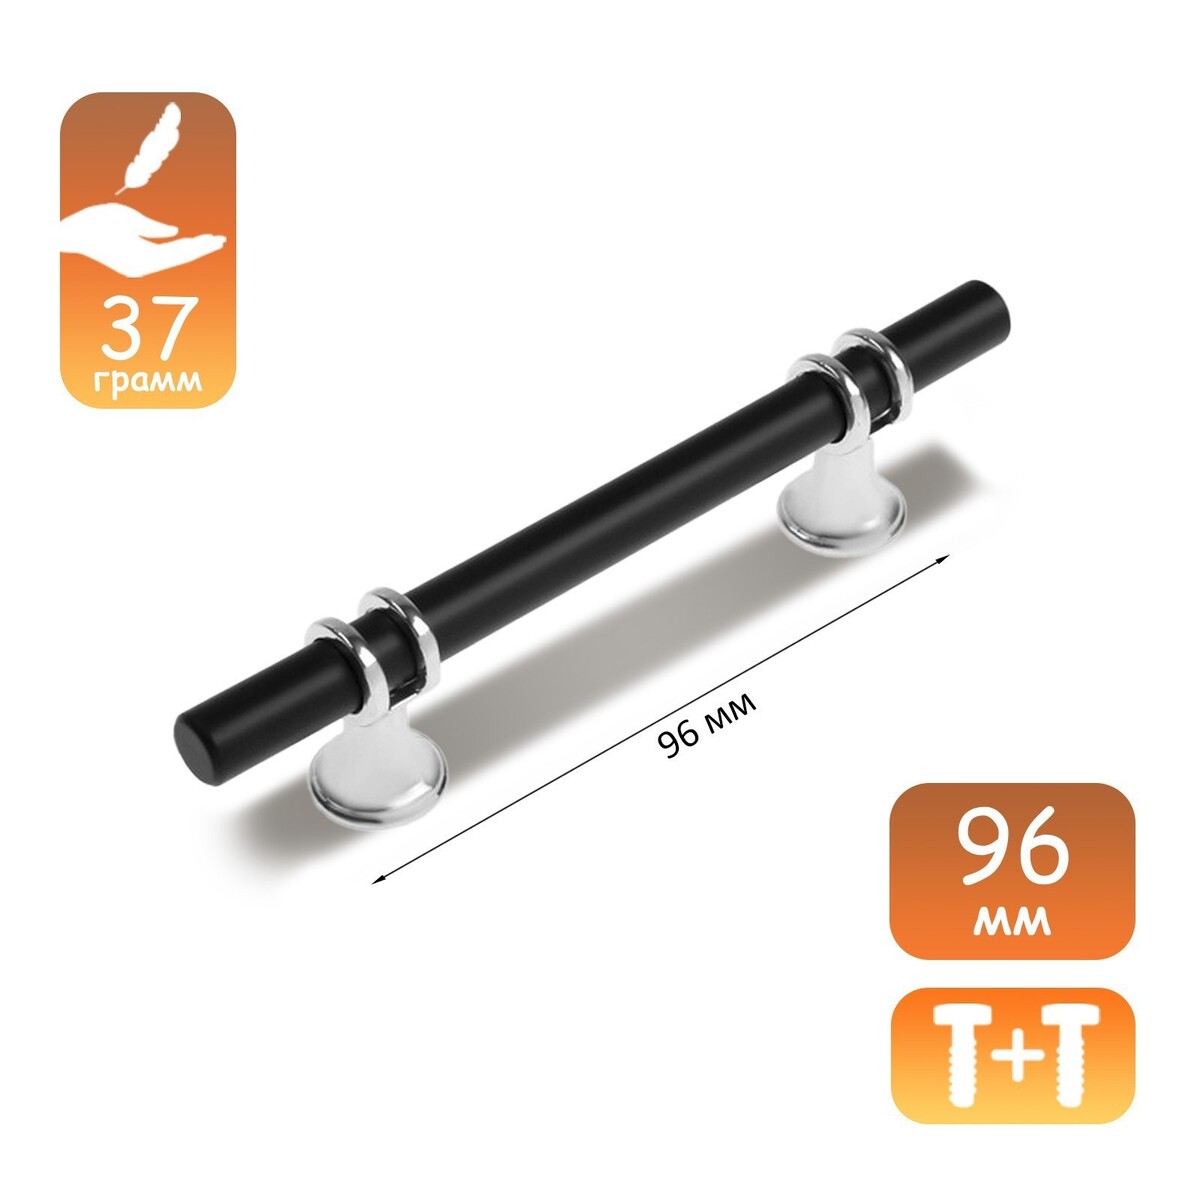 Ручка скоба cappio, м/о 96 мм, d=12 mm, пластик, цвет хром/черный ручка кнопка cappio d 12 мм пластик хром